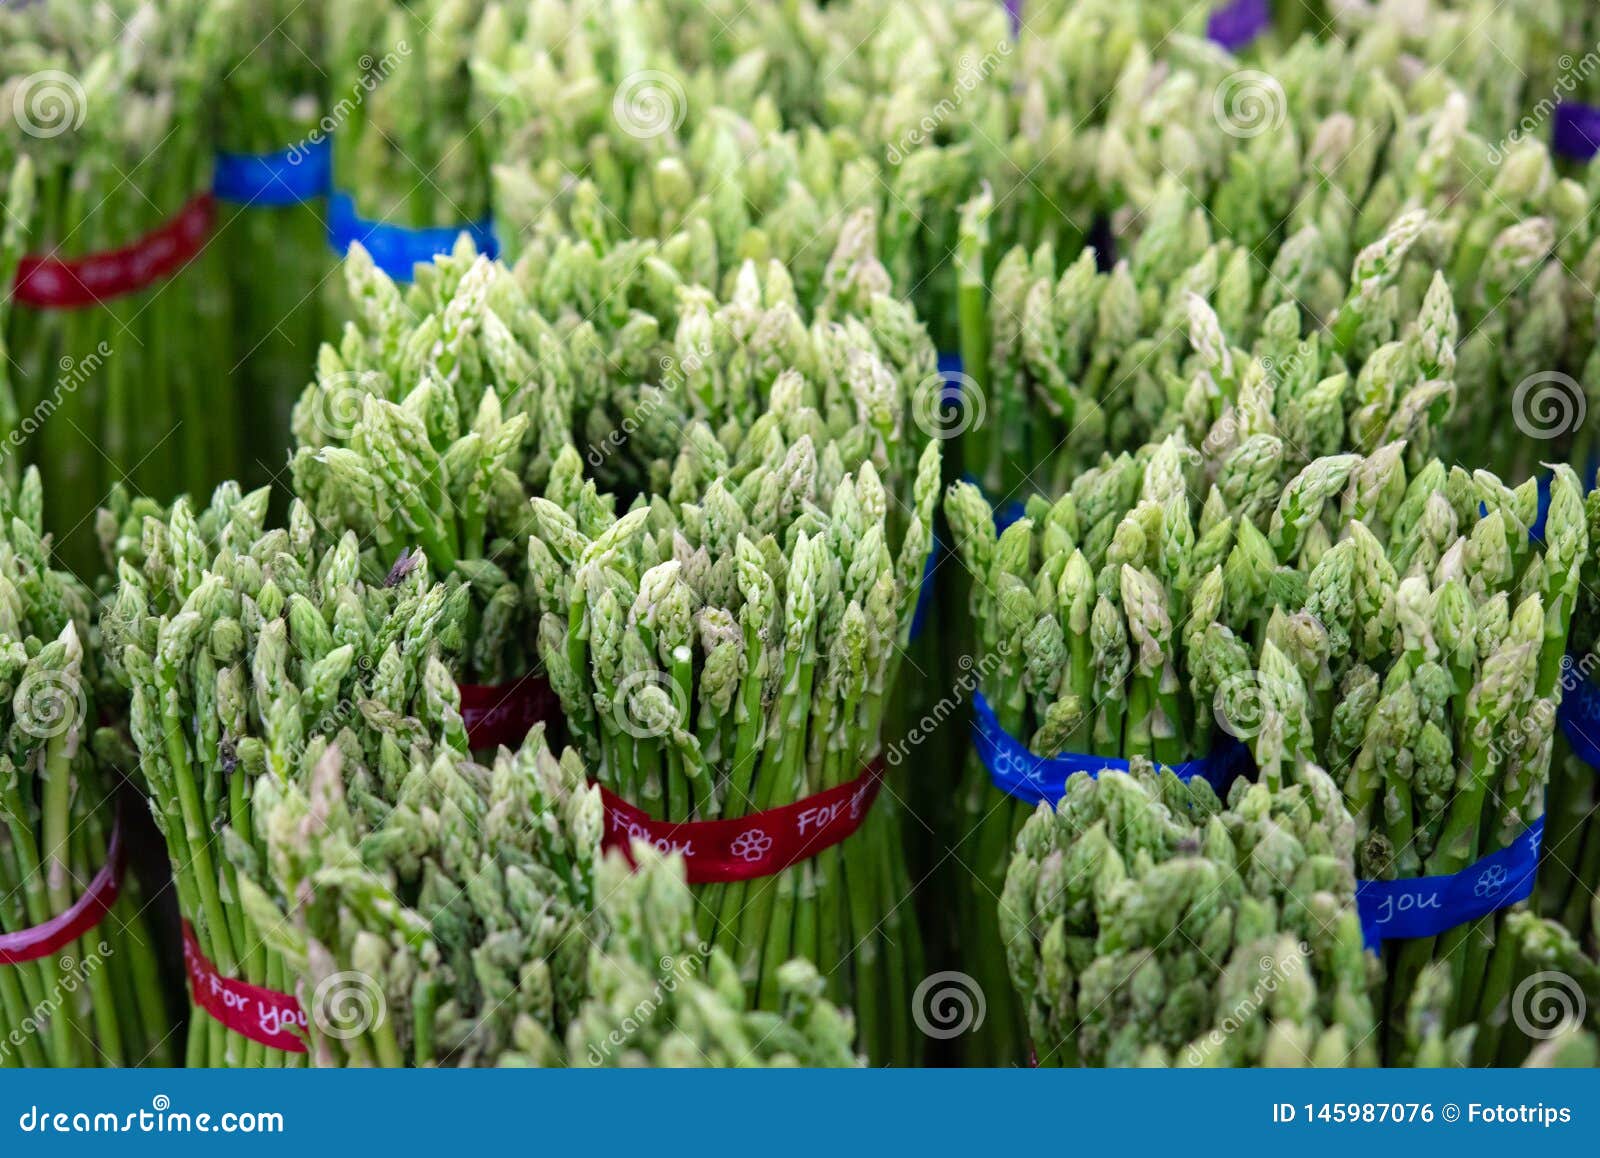 Asparagus w plikach: Świeży zielony asparagus zdrowe je?? przy rolnika supermarke, uprawia ziemię pojęcie selekcyjną ostrość